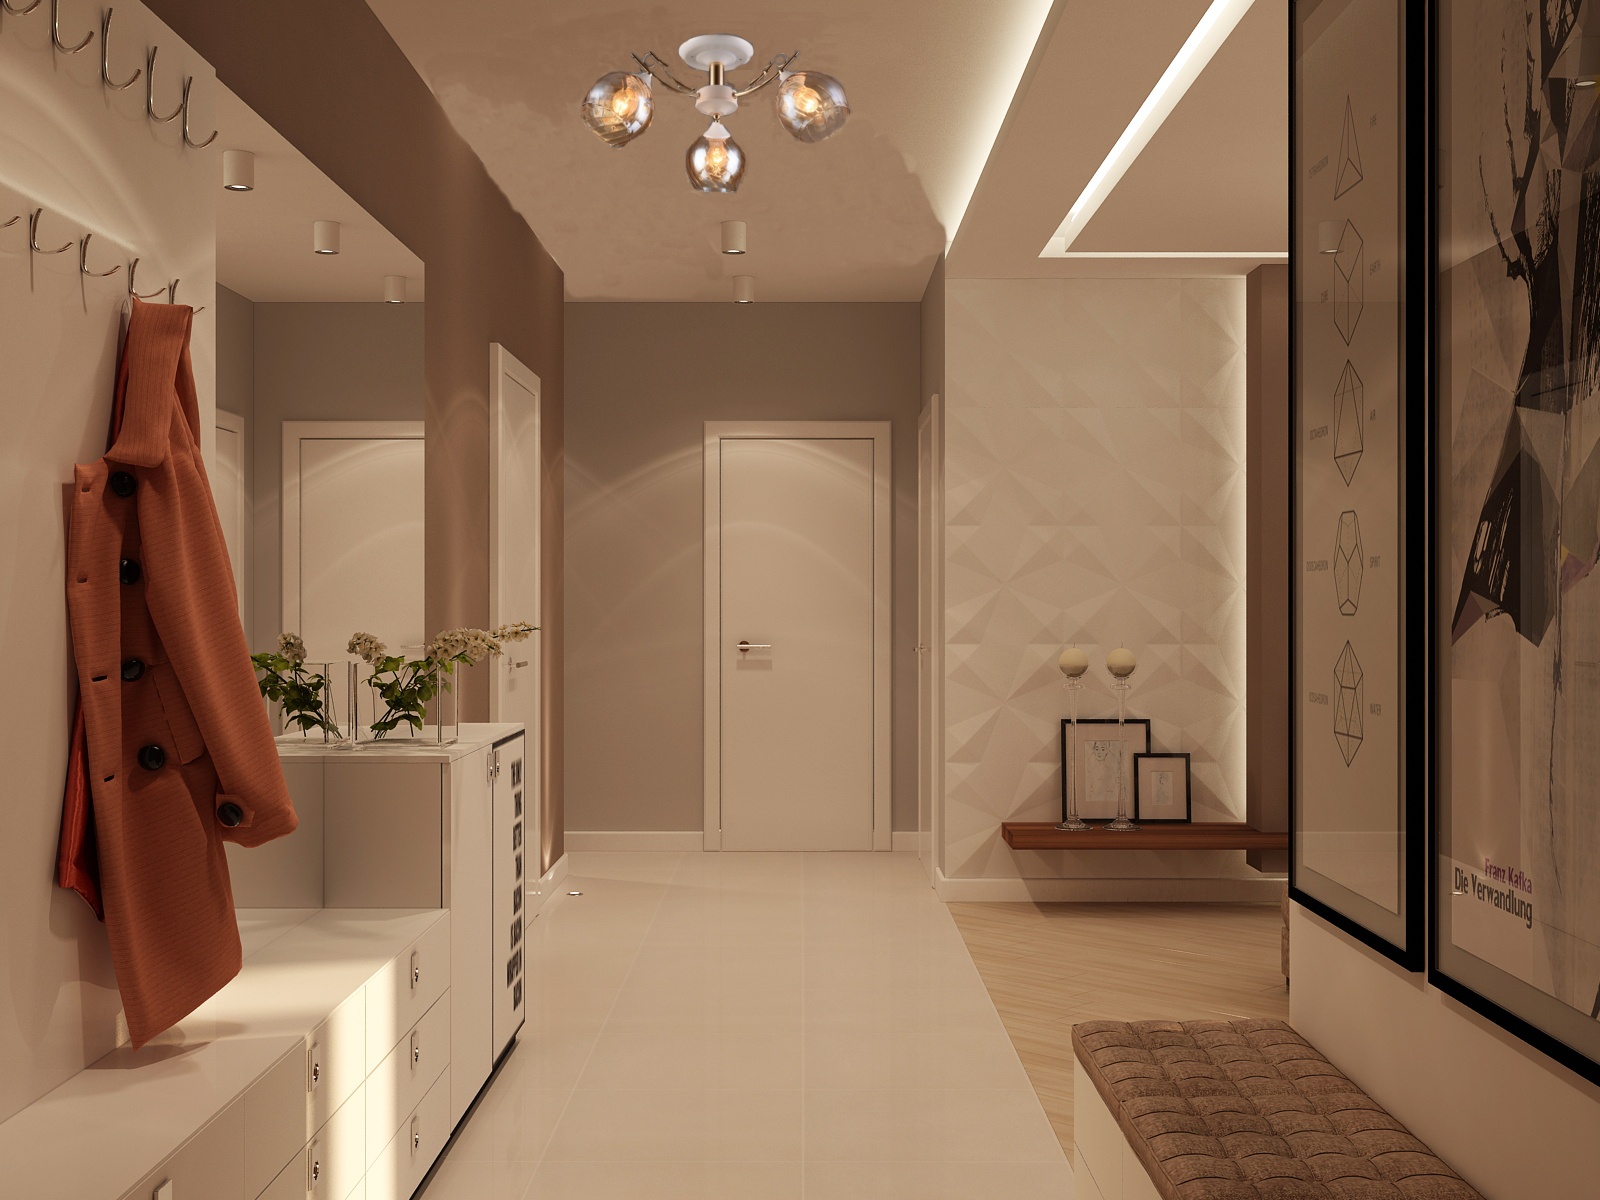 Дизайн длинного коридора в квартире: интерьер прихожей, оформление, идеи и решения, как обыграть узкий шкаф, планировка, как обставить